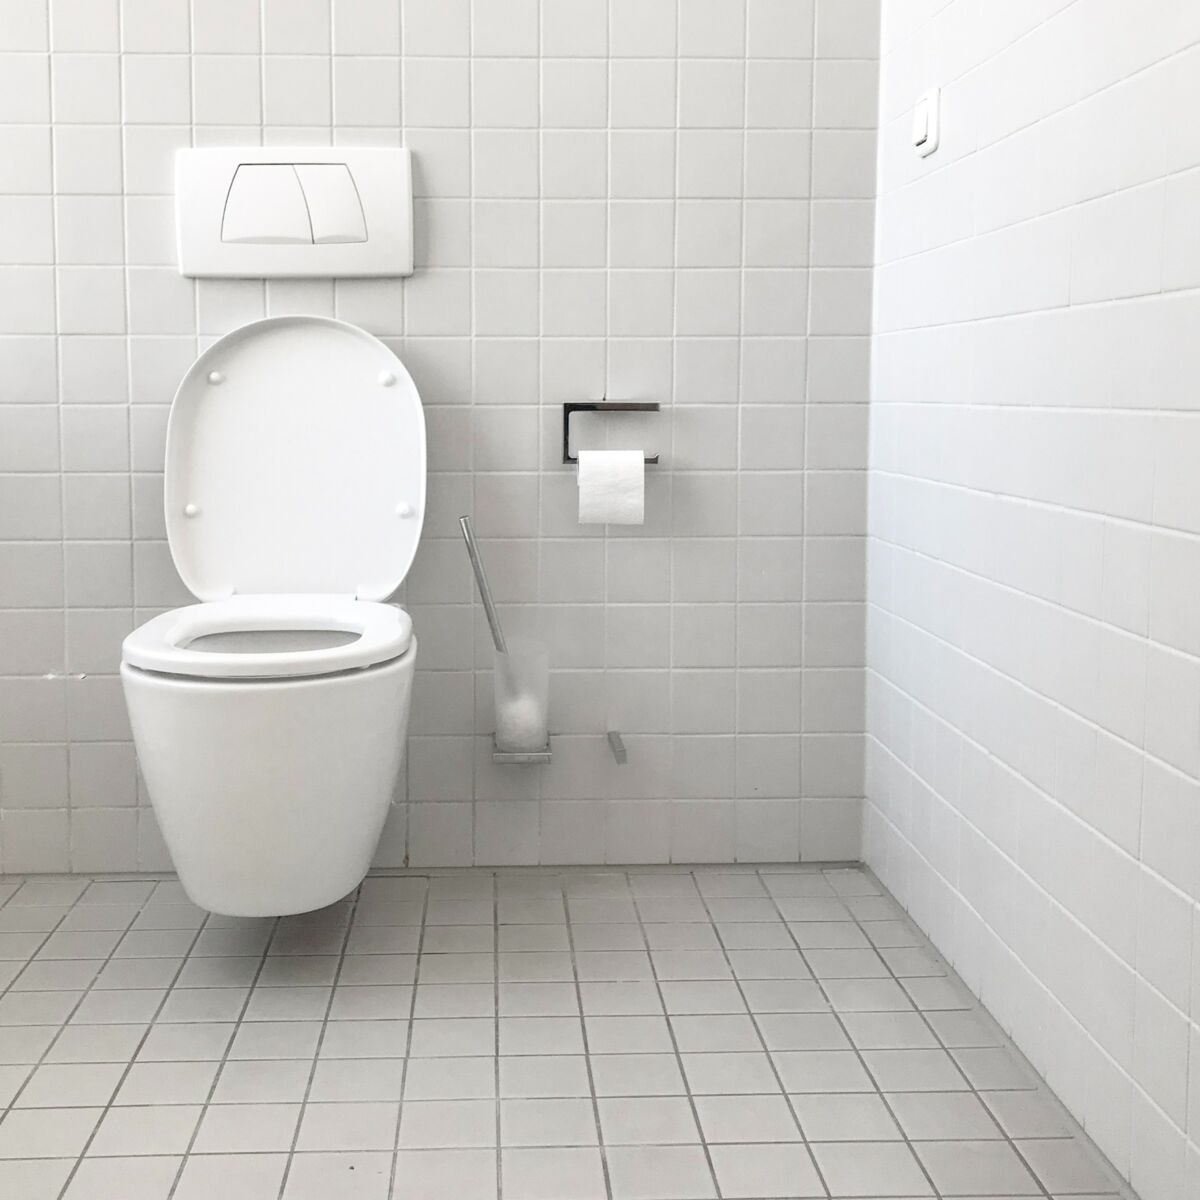 Bactéries : quelles maladies est-on susceptible de contracter aux toilettes  ? : Femme Actuelle Le MAG